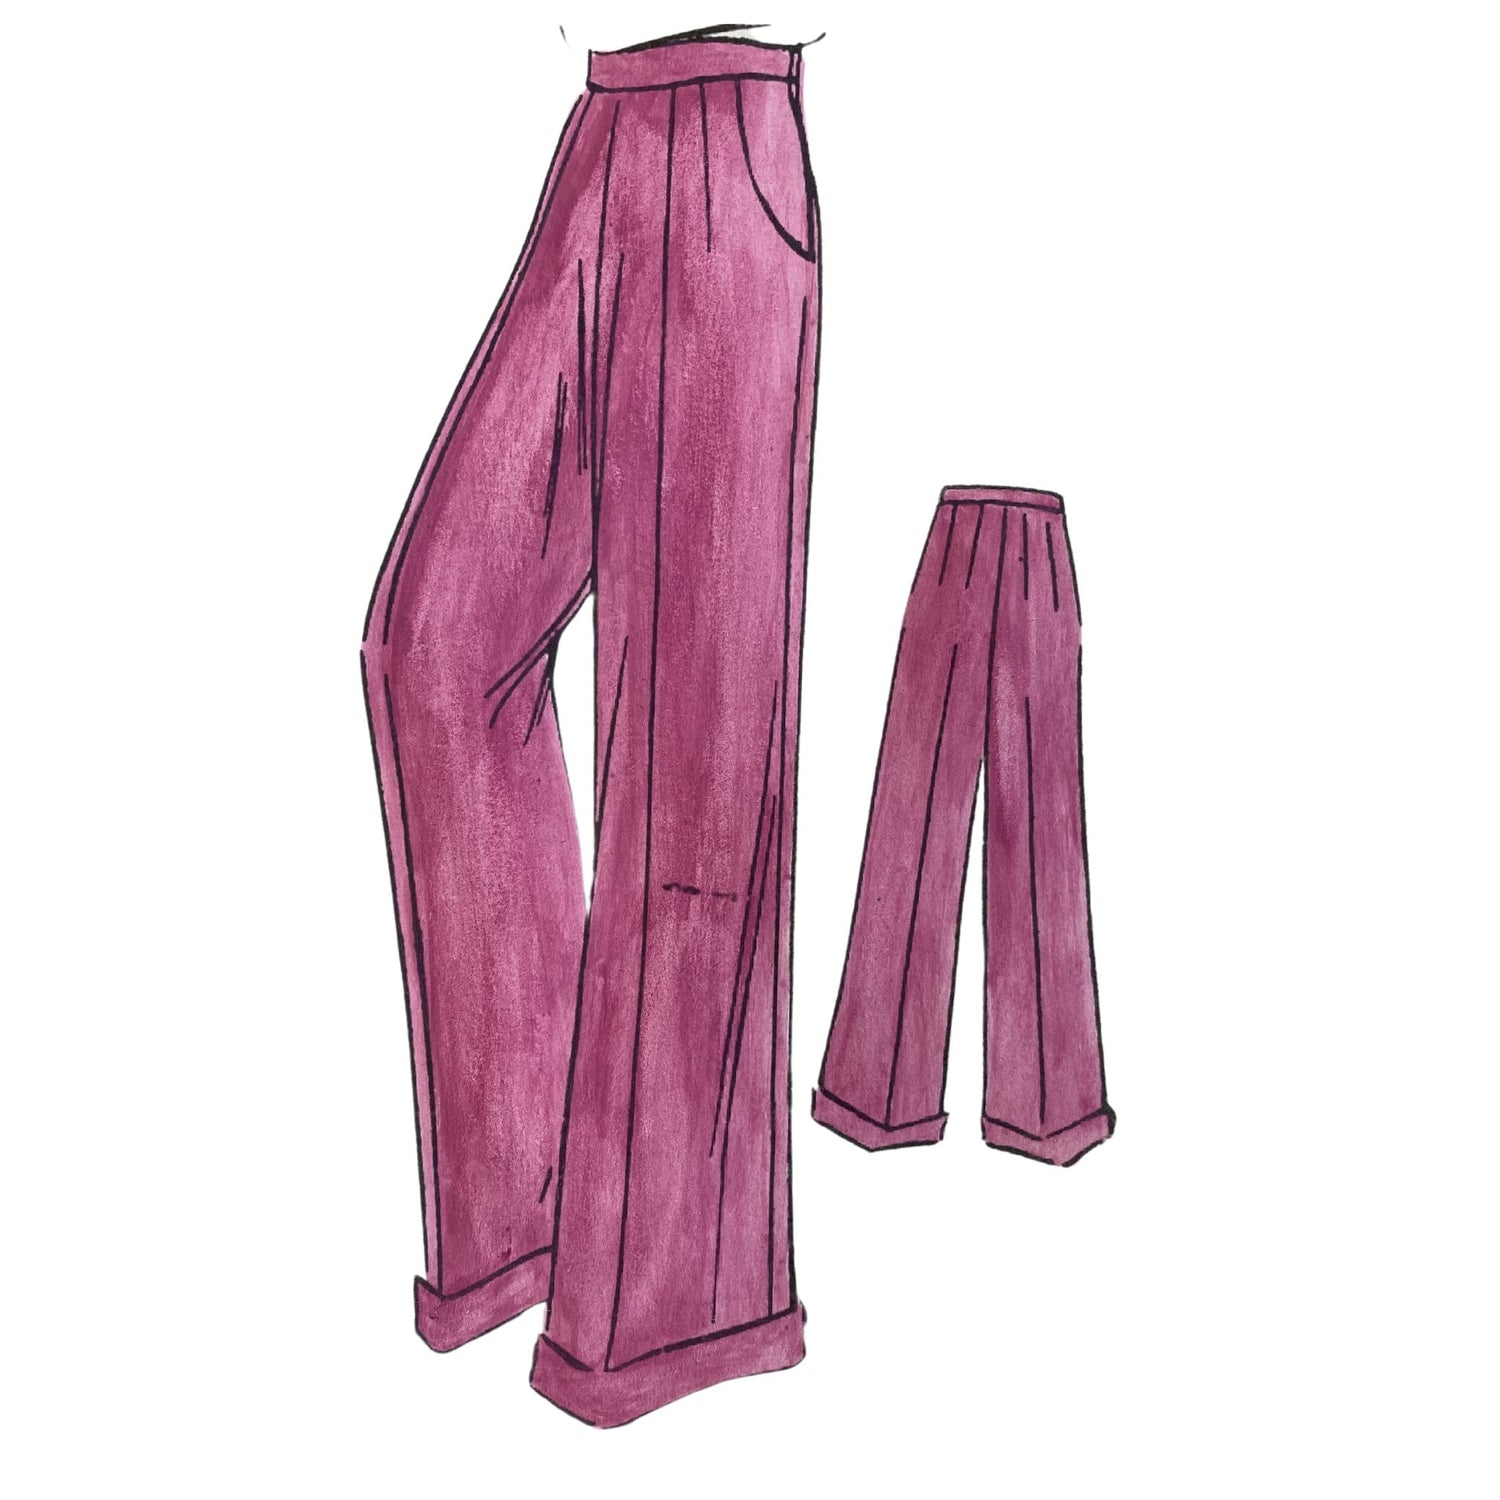 Iconic 1970s Patch Pocket Oxford Bag Trouser Suit  RevivalVintage